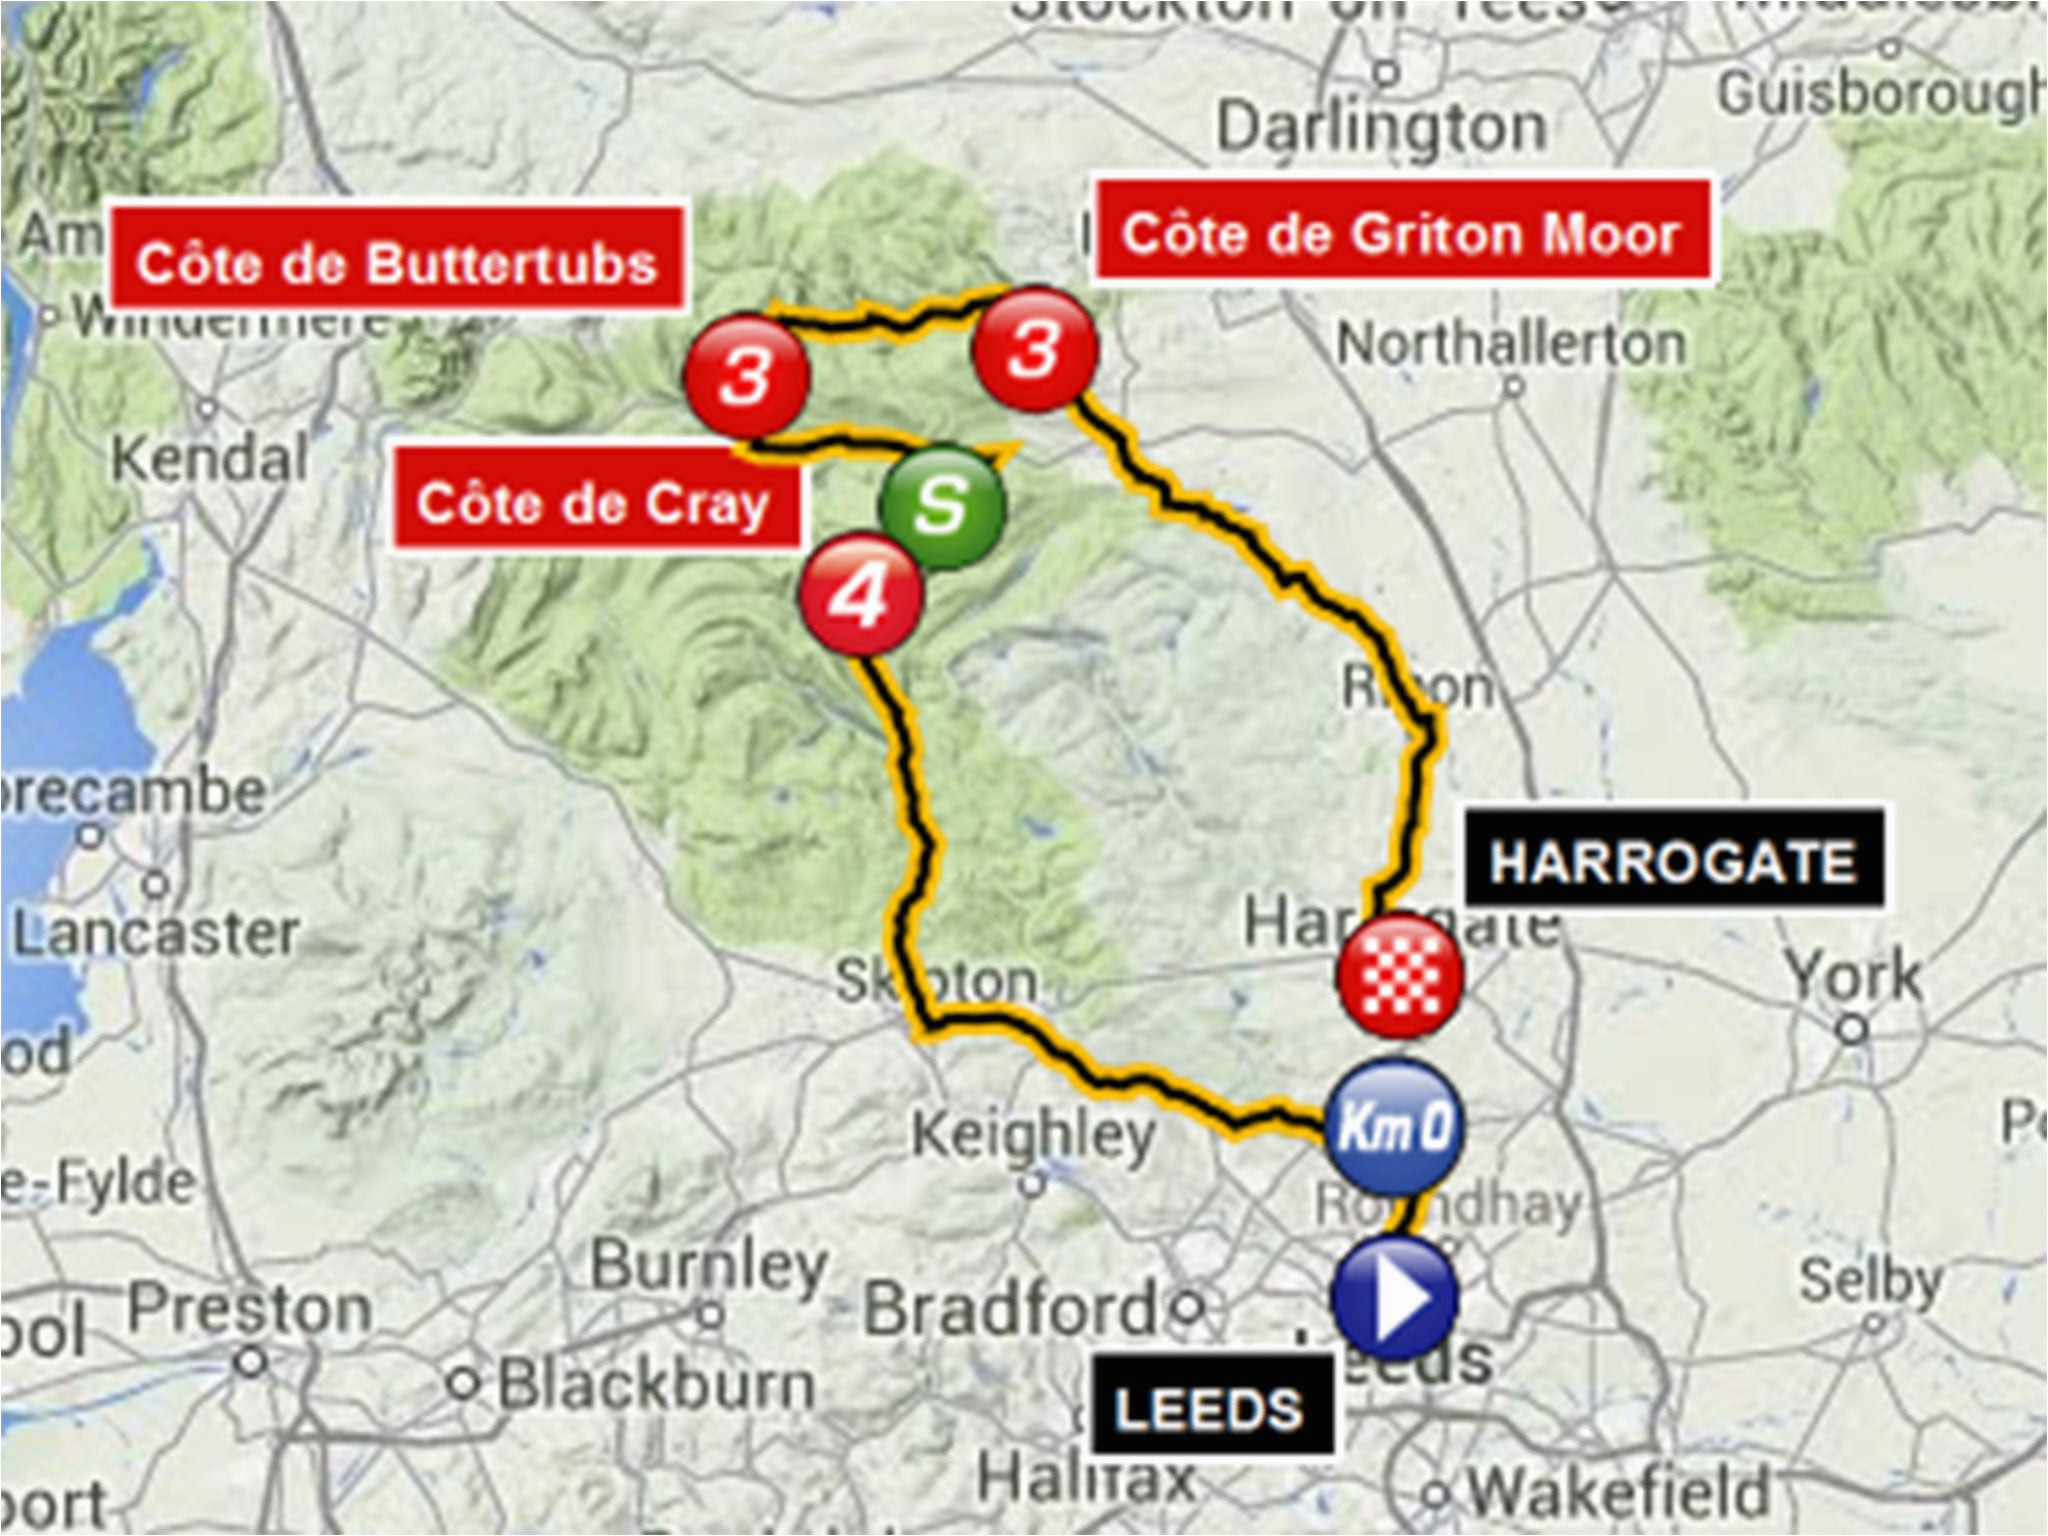 Tour De France Yorkshire Route Map tour De France Route 2014 Guide to British Stages Of Le Grand tour